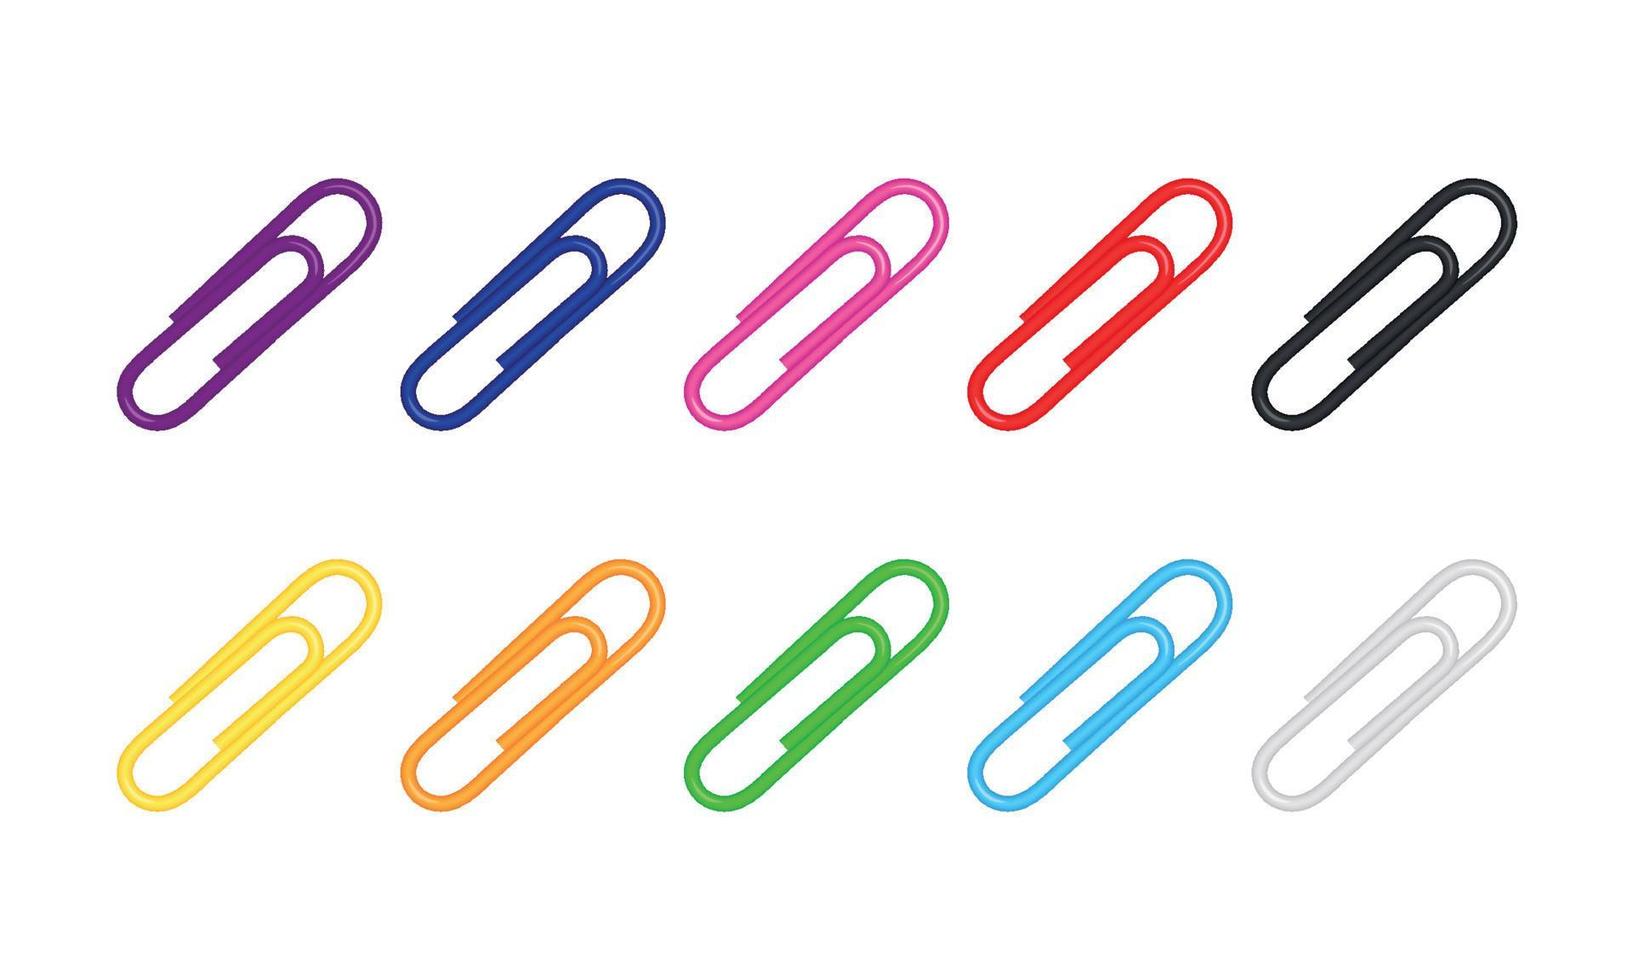 Conjunto de vector realista 3d de clips de papel metálicos. morado, rojo, azul, negro, blanco, verde, amarillo, naranja, rosa. aislado sobre fondo blanco. illutration vectorial editable